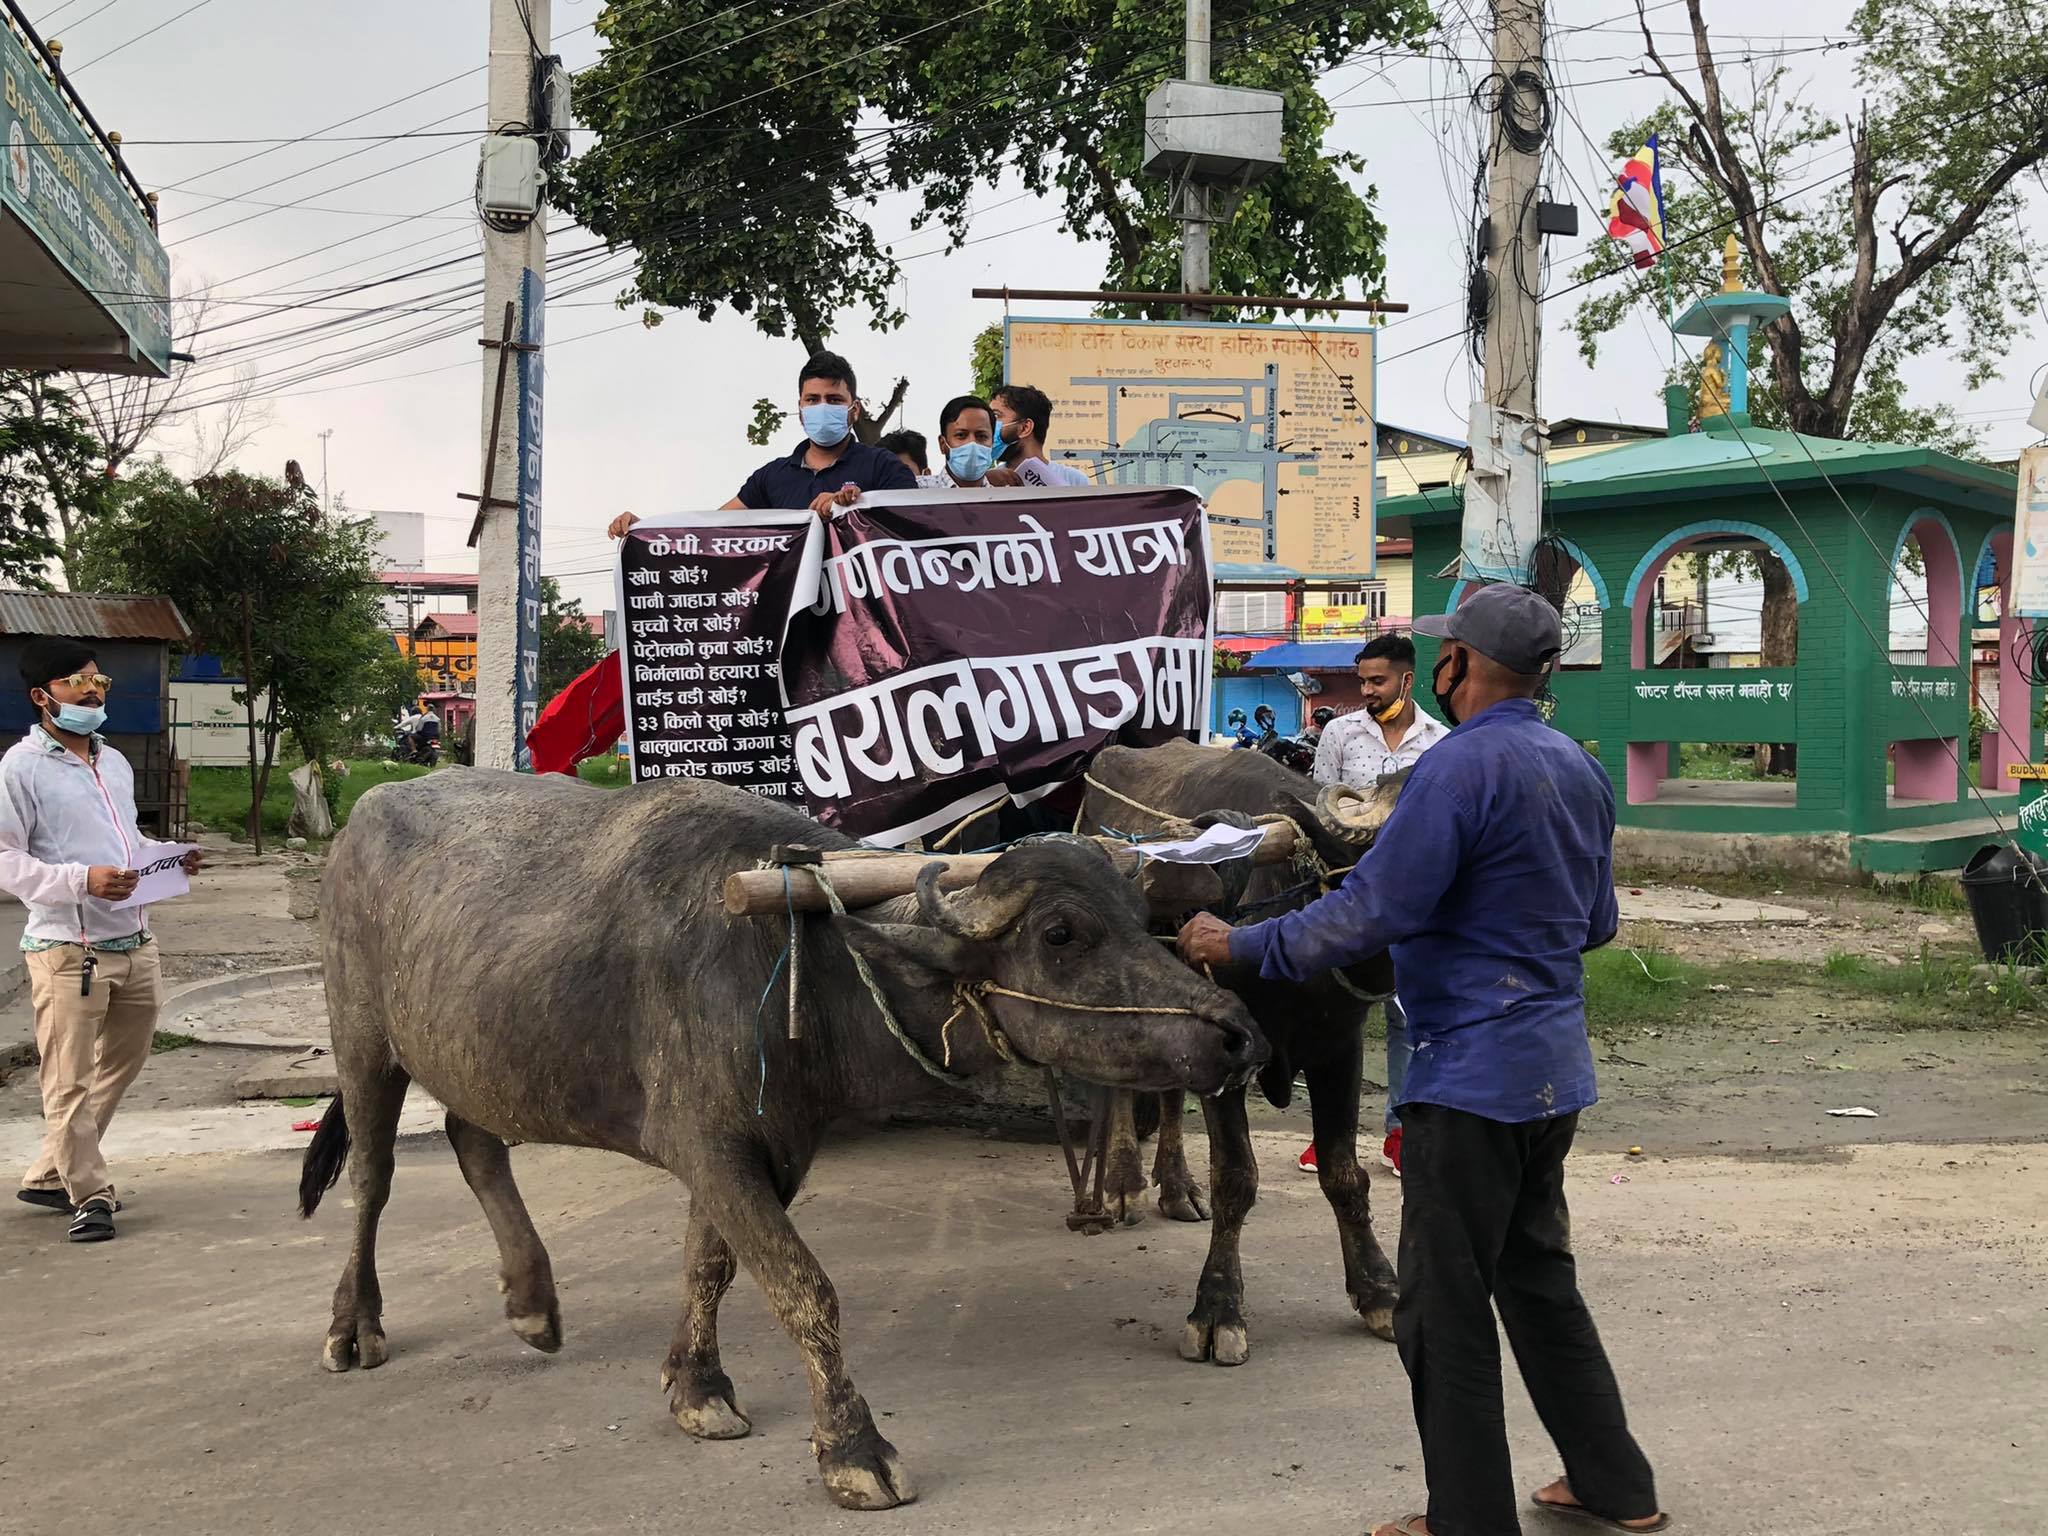 बयलगाडा प्रदर्शनमार्फत नेविसंघले गर्‍यो सरकारको विरोध